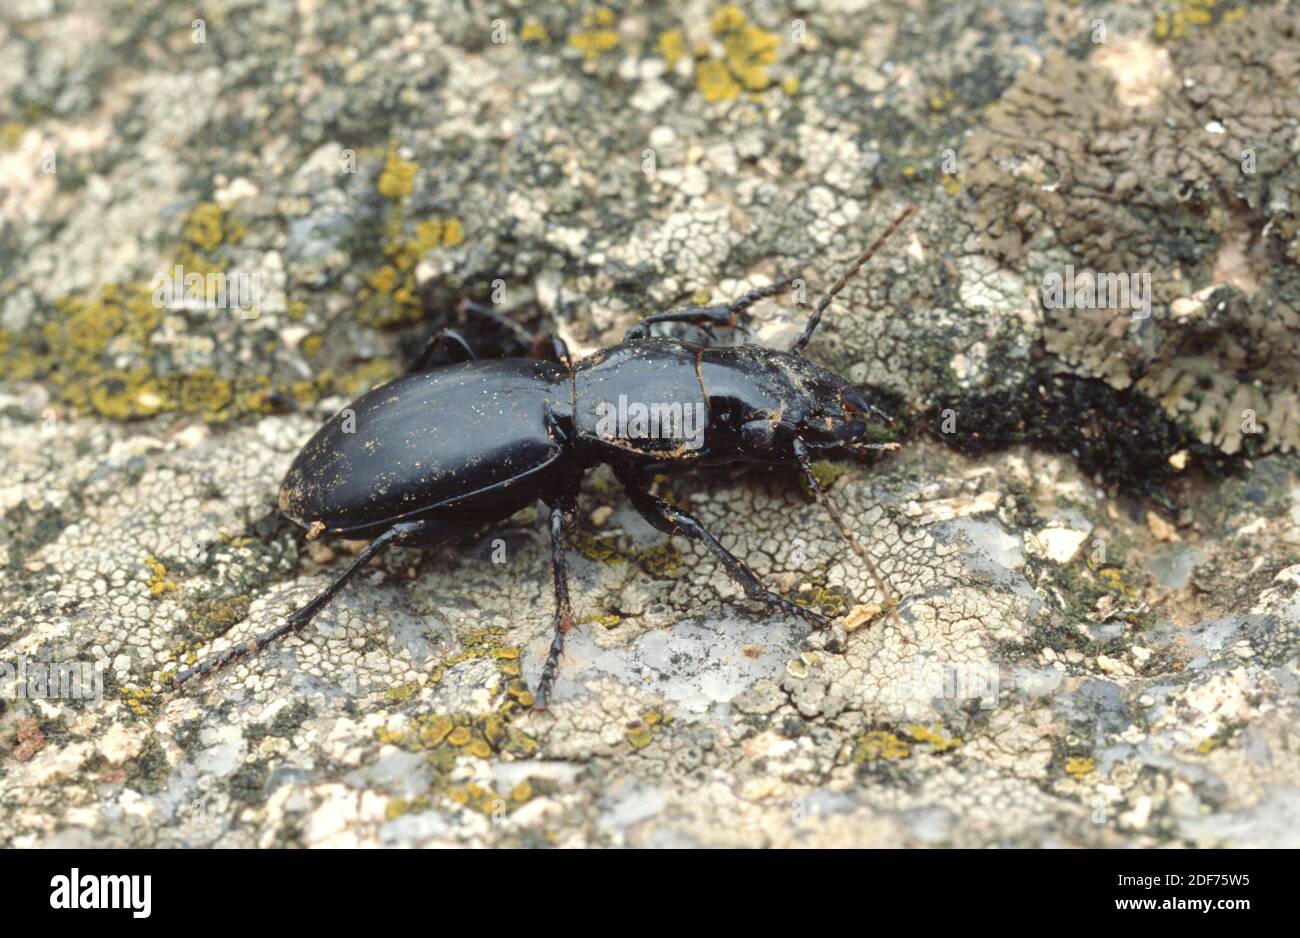 El escarabajo de la tierra (Broscus cephalotes) es un insecto nativo de Europa. Foto de stock